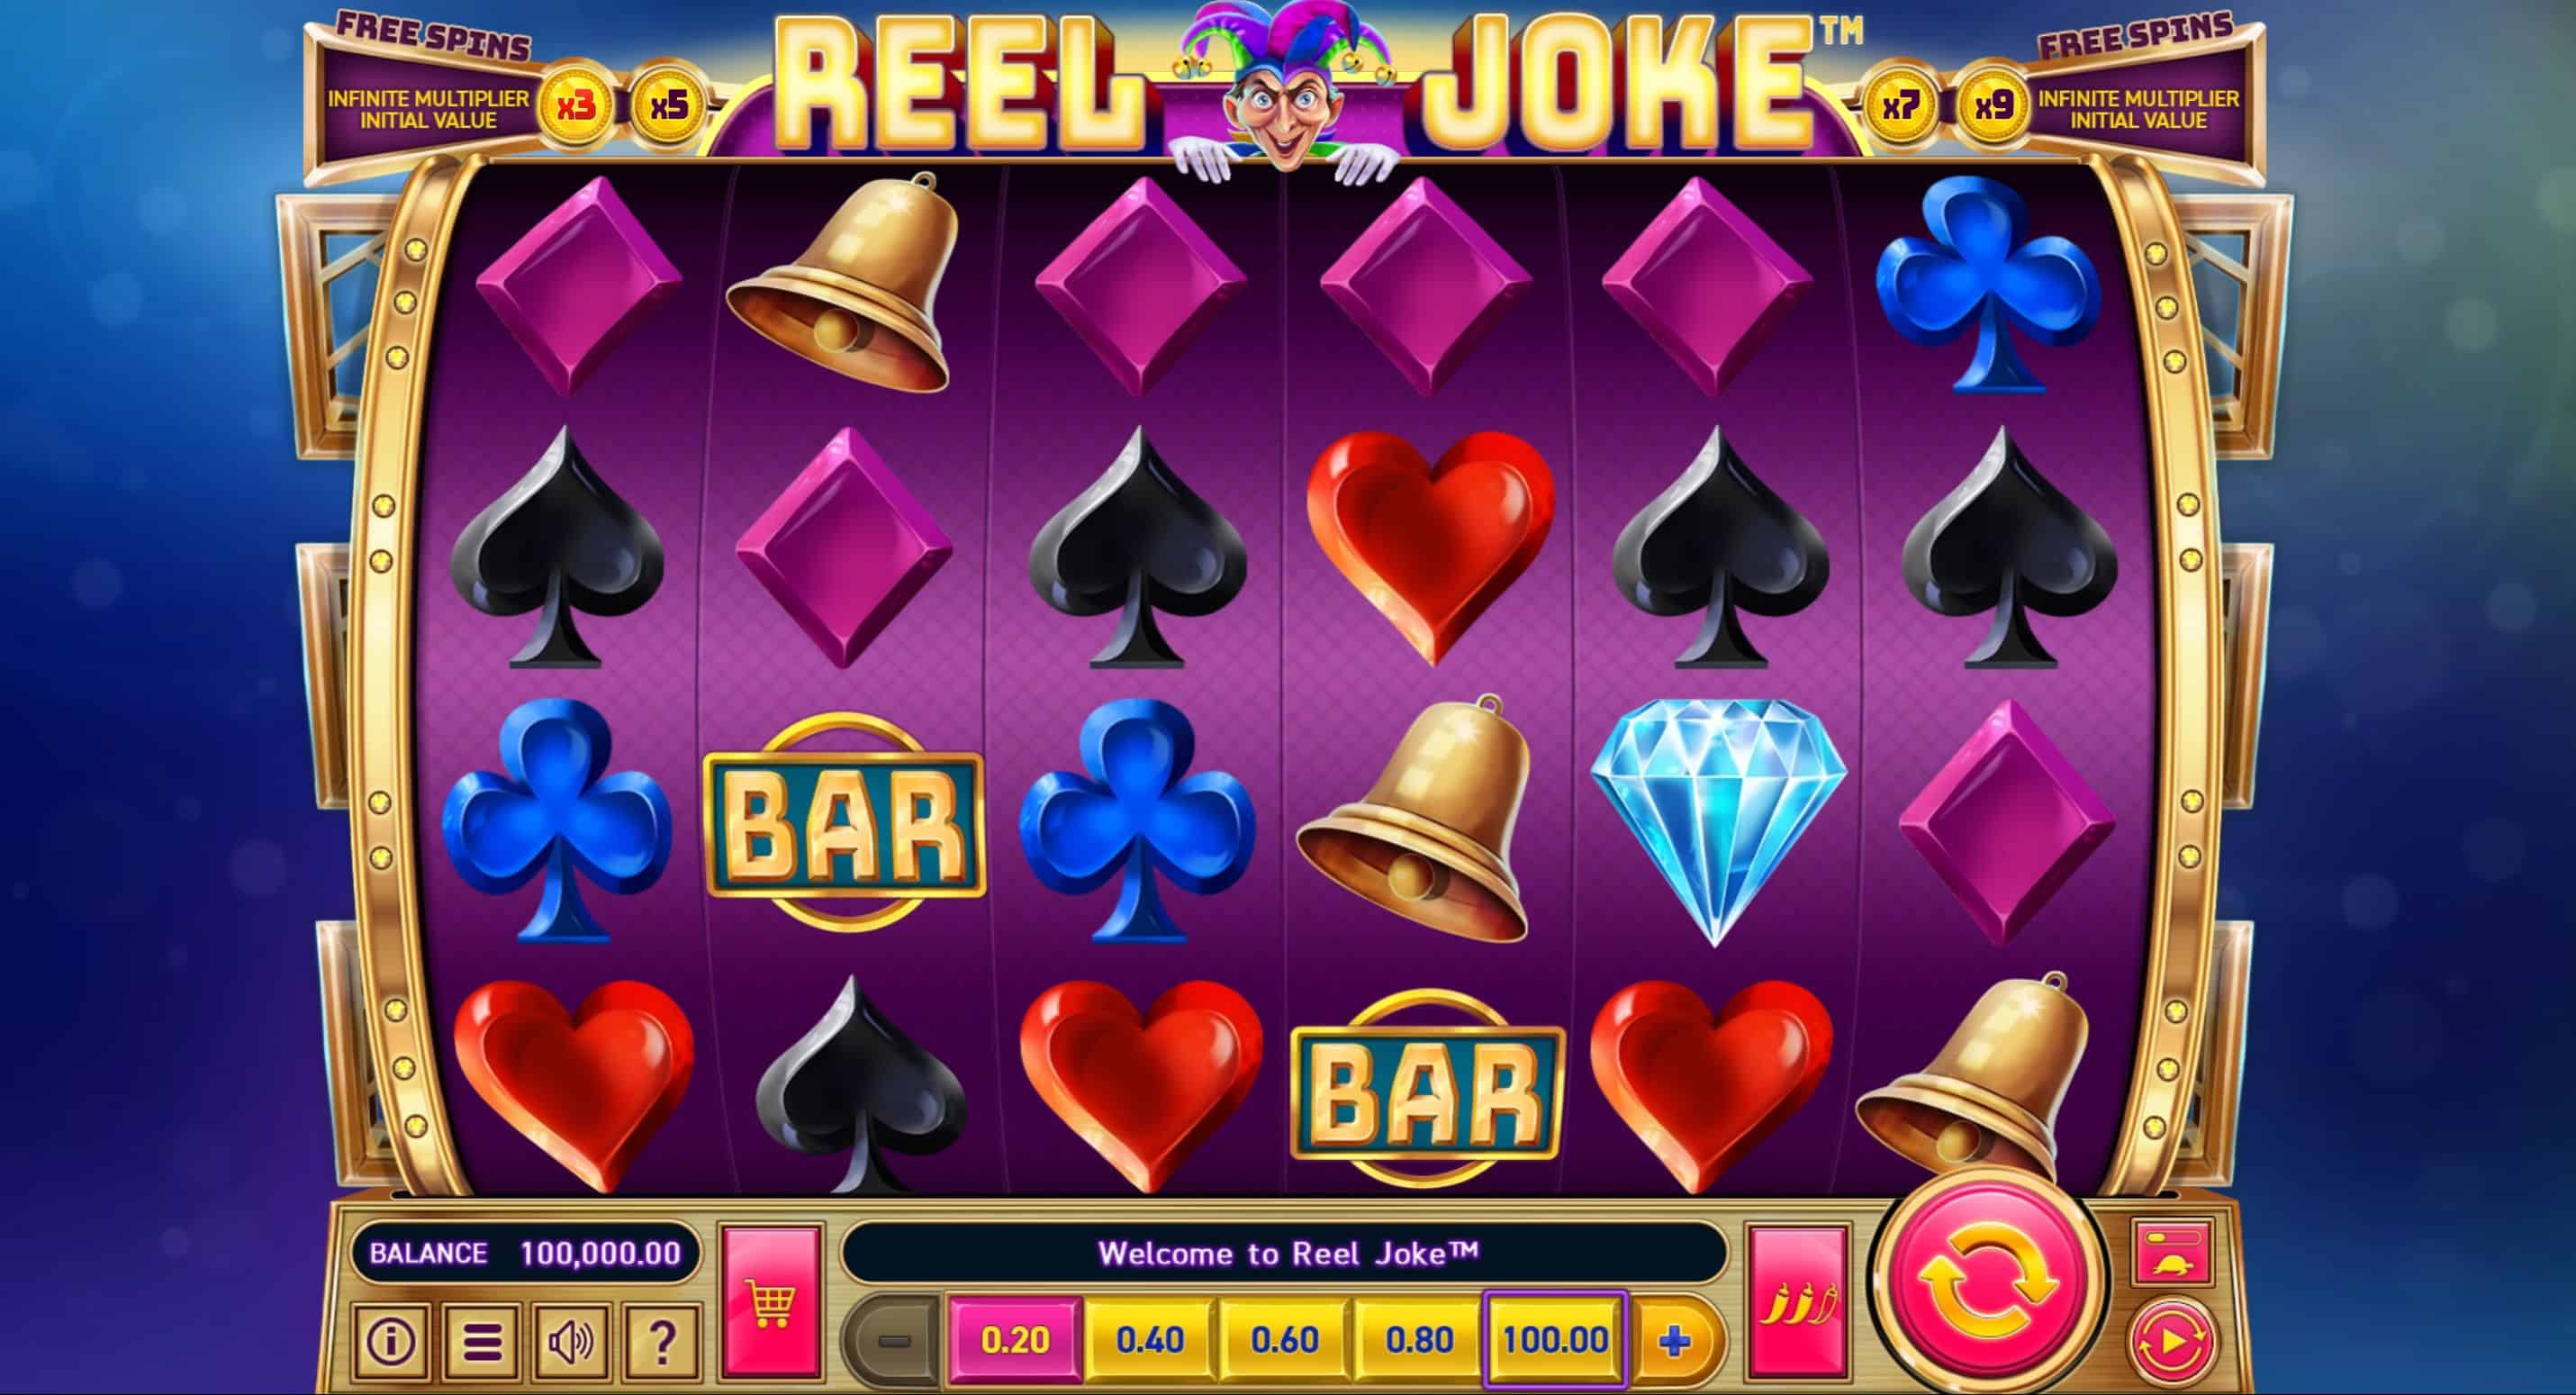 Reel Joke Slot Game Free Play at Casino Ireland 01